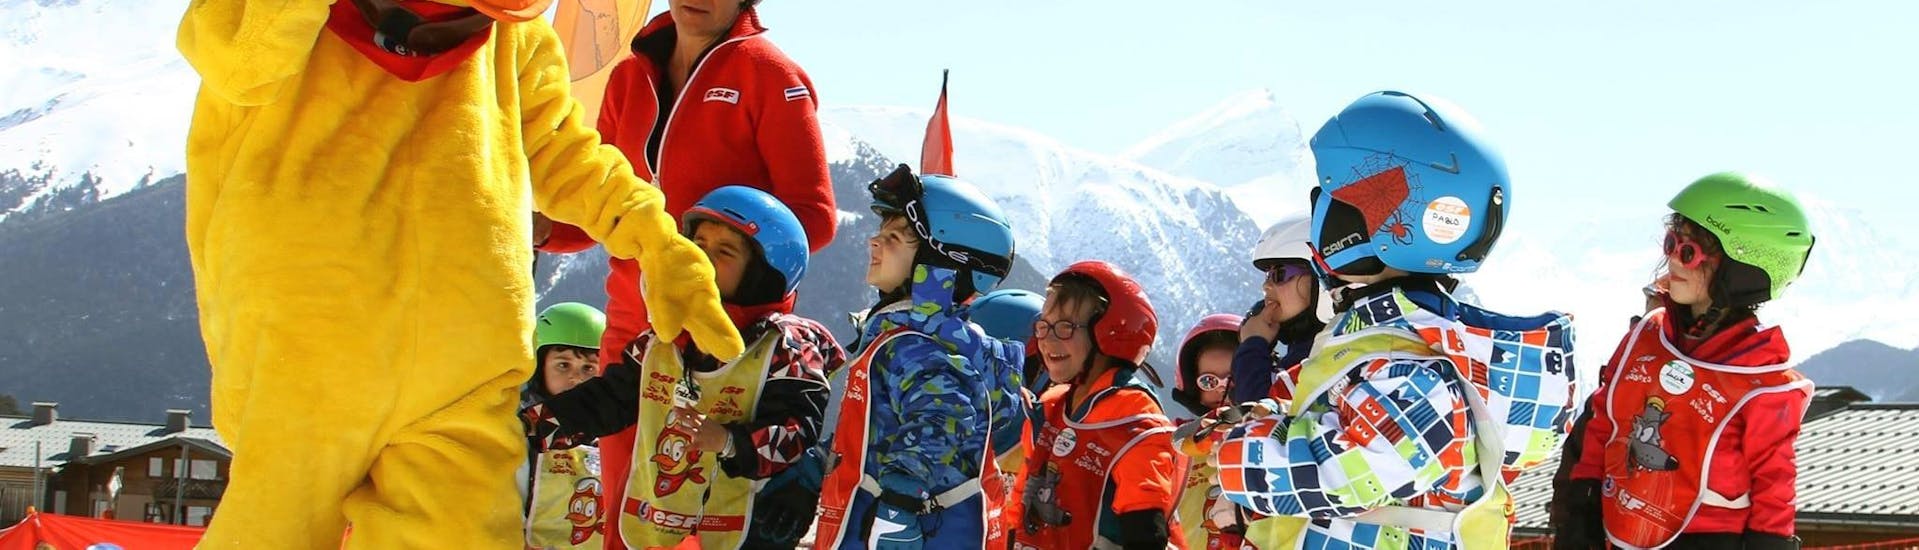 Kinder-Skikurs ab 2 Jahren ohne Erfahrung.